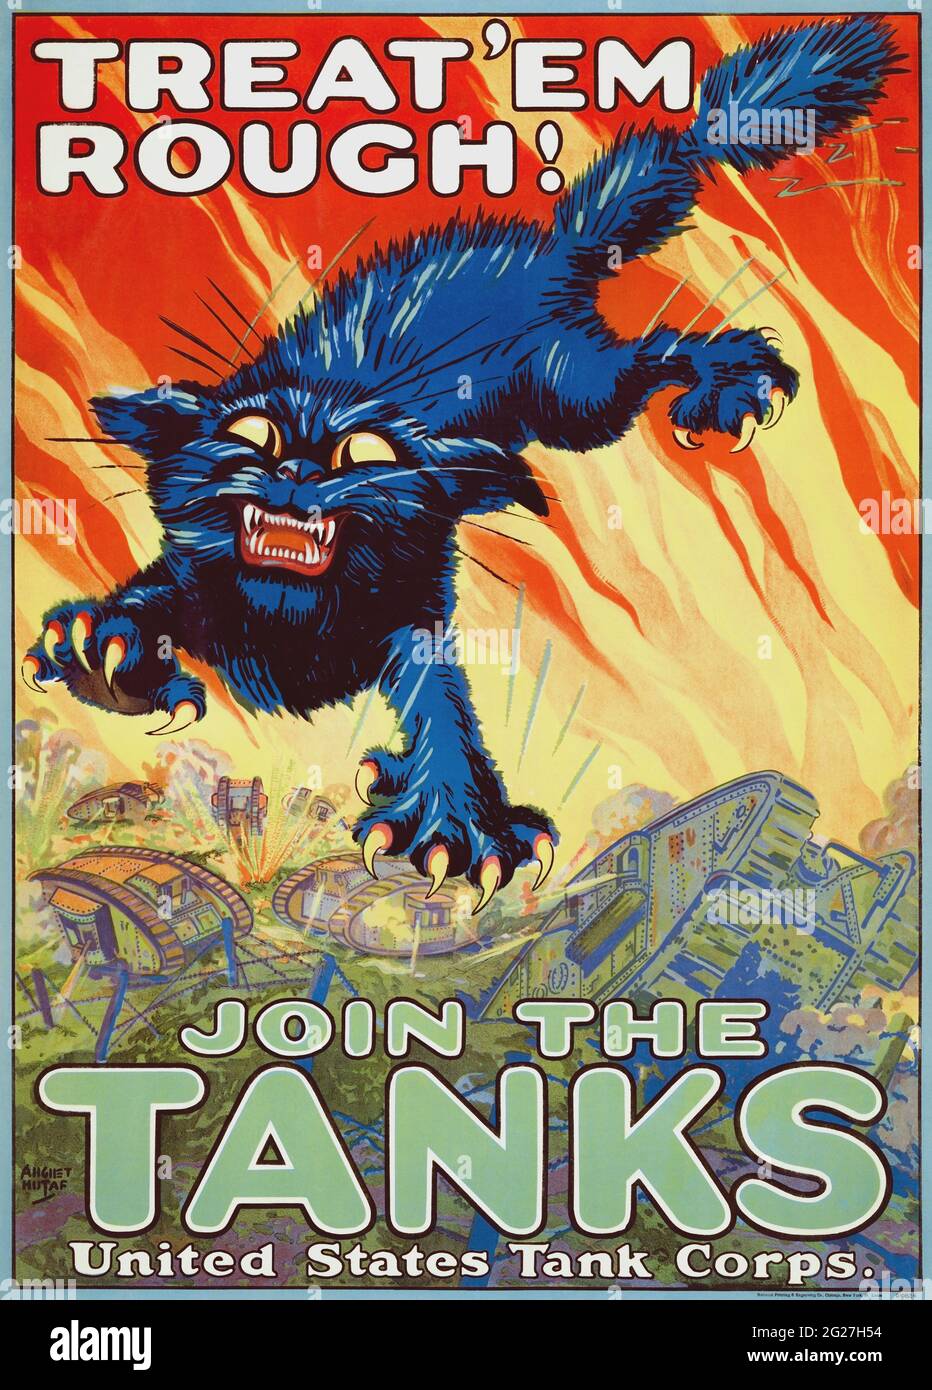 Une affiche de recrutement de Tank corps en 1917 montrant une figure béante d'un chat noir exposant ses griffes. Banque D'Images